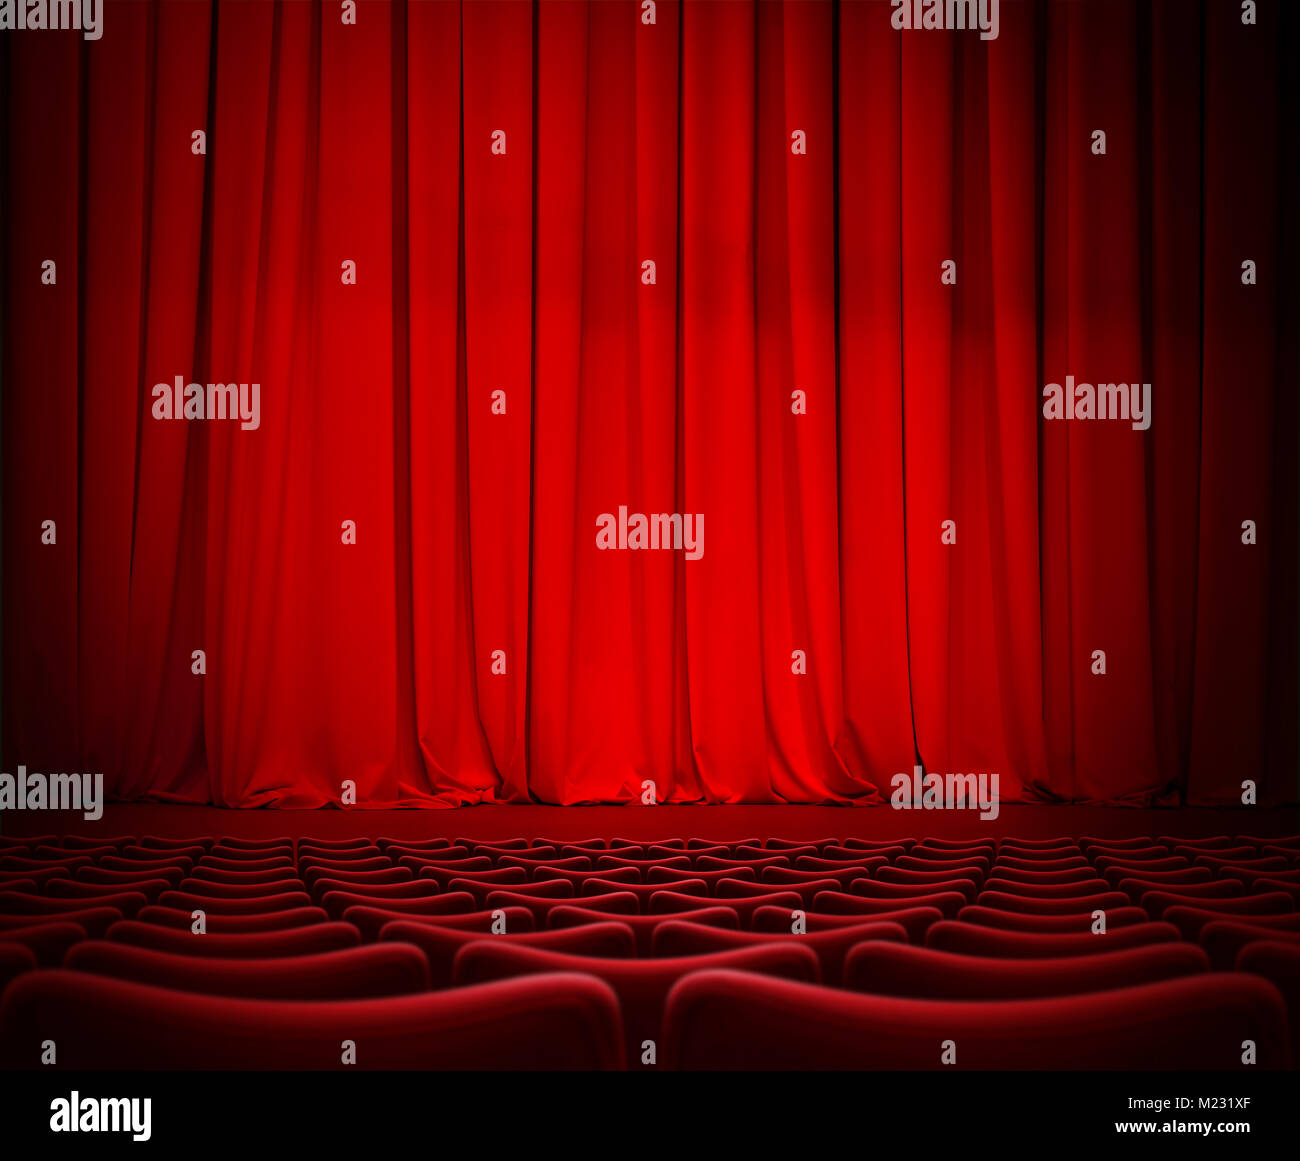 Théâtre rideau rouge sur scène avec sièges en velours 3d illustration Banque D'Images